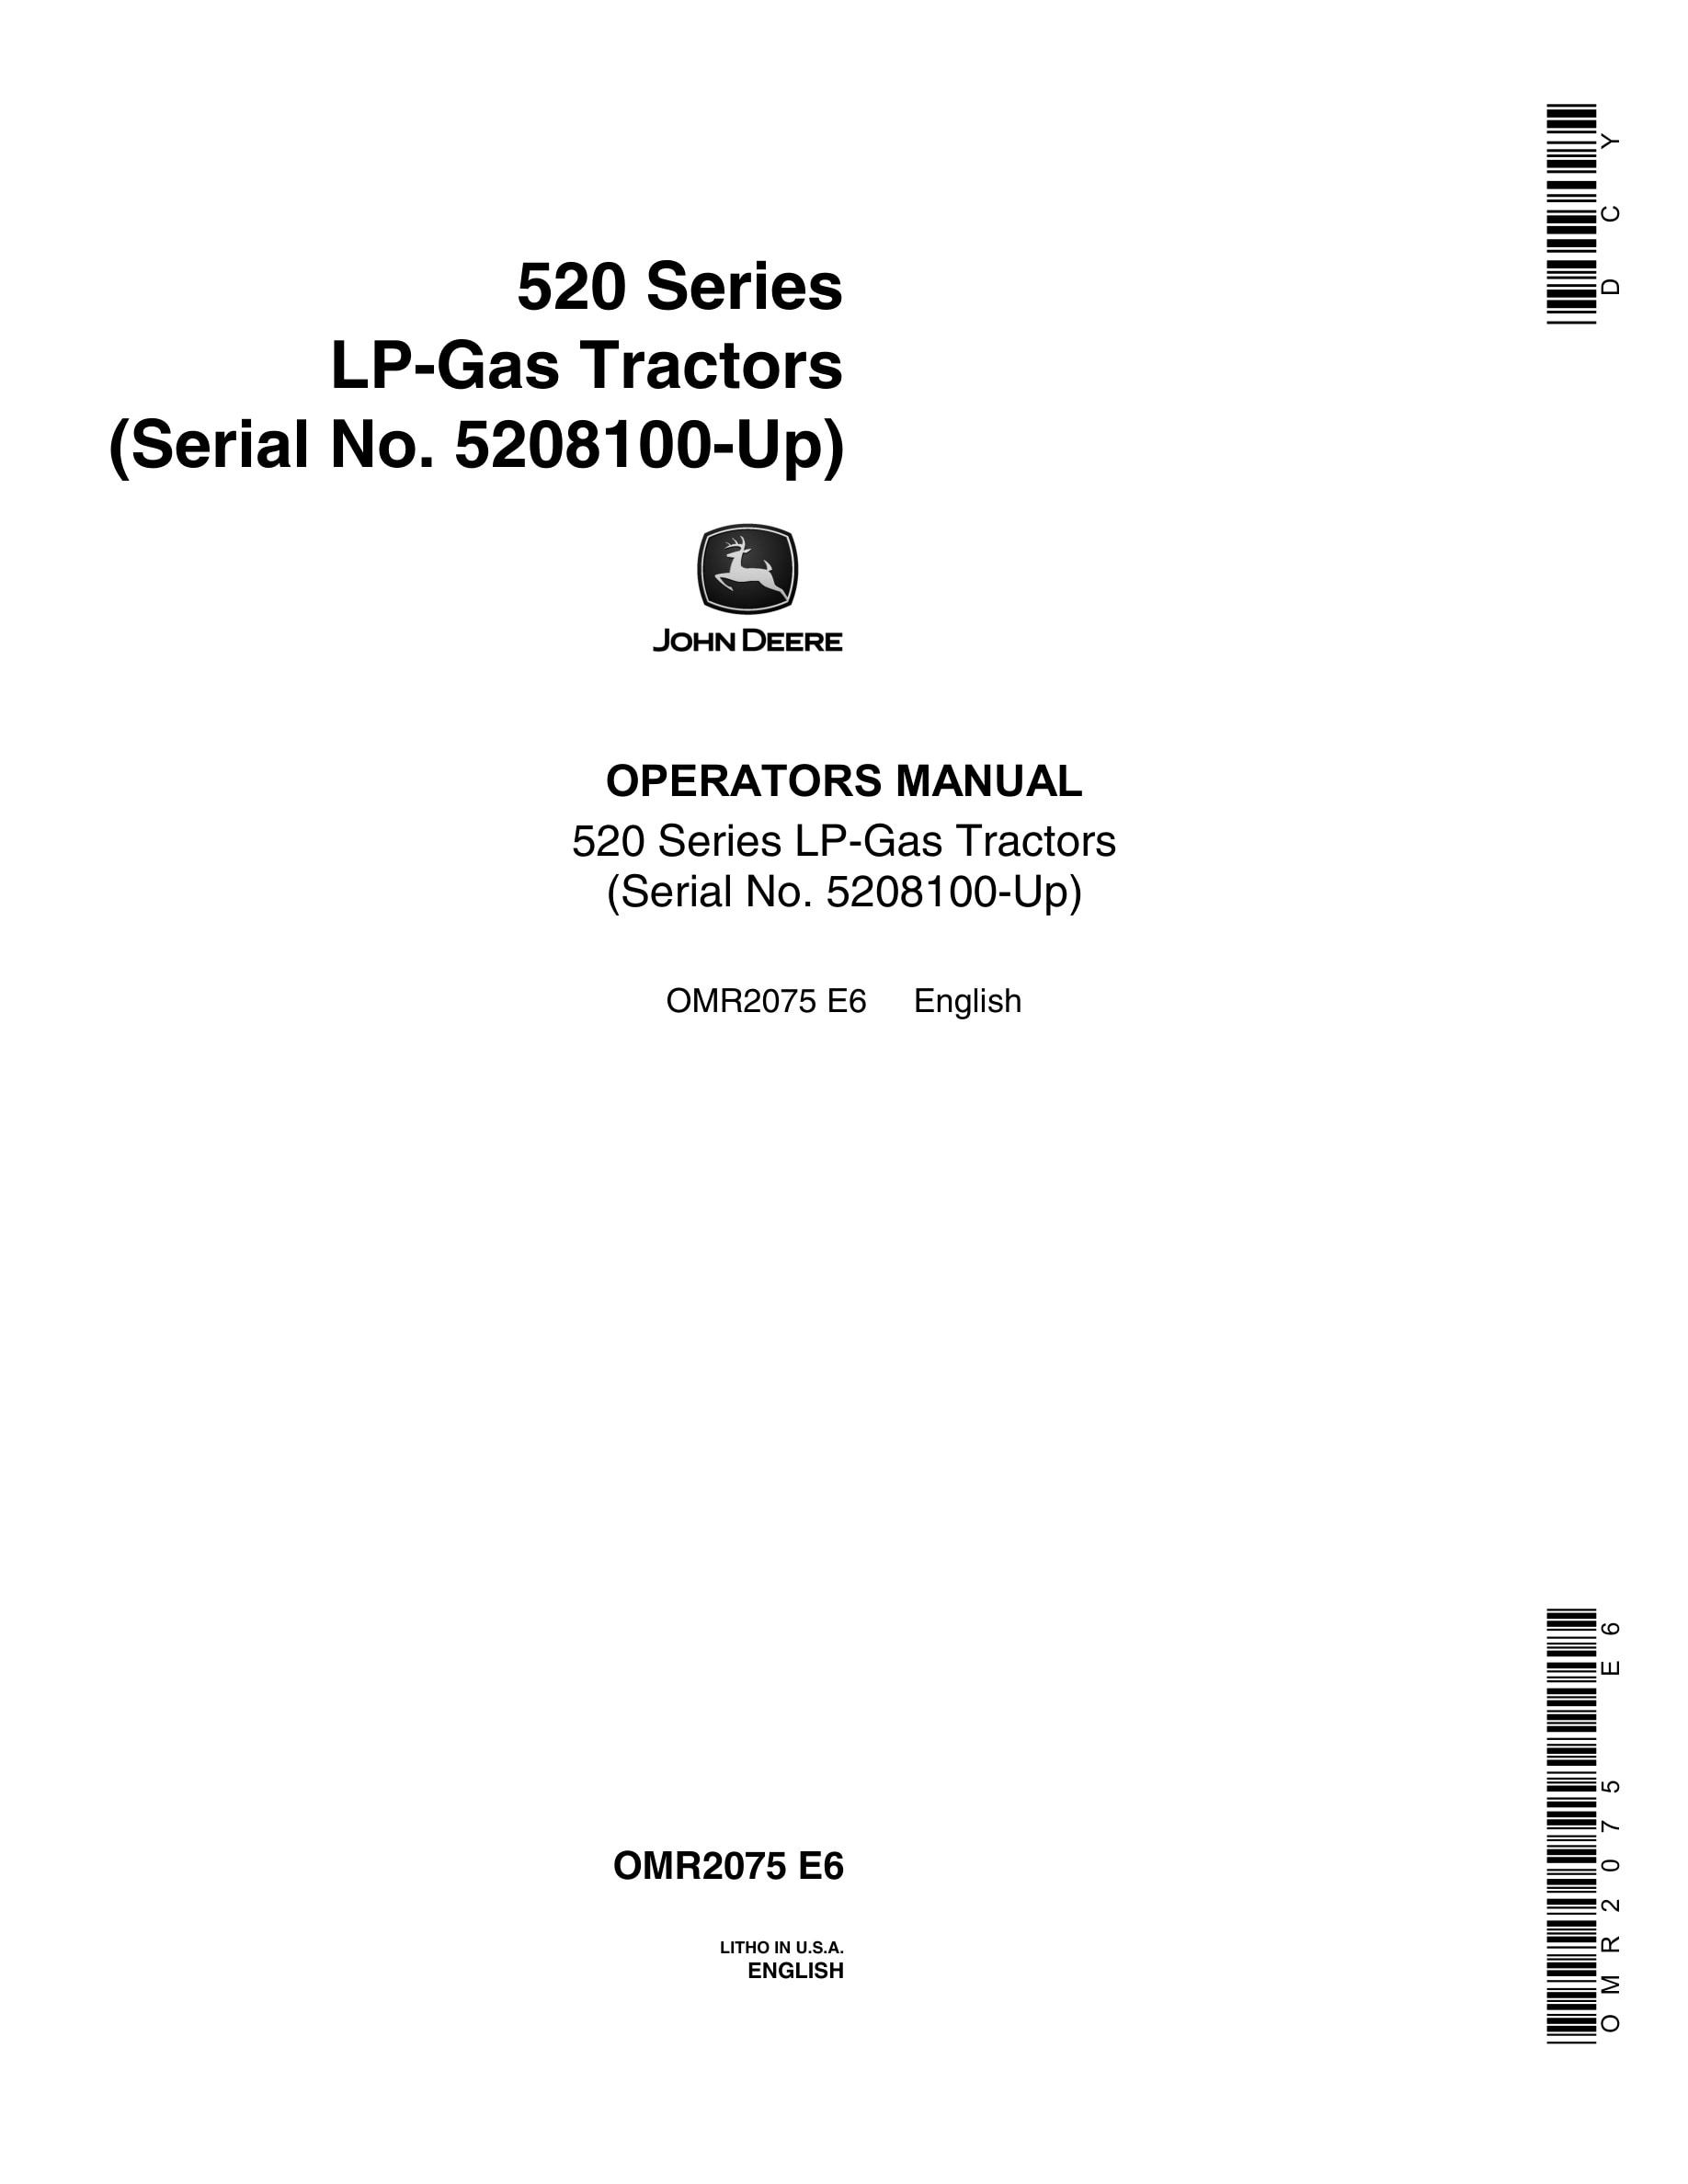 John Deere 520 Series Tractor Operator Manual OMR2075-1